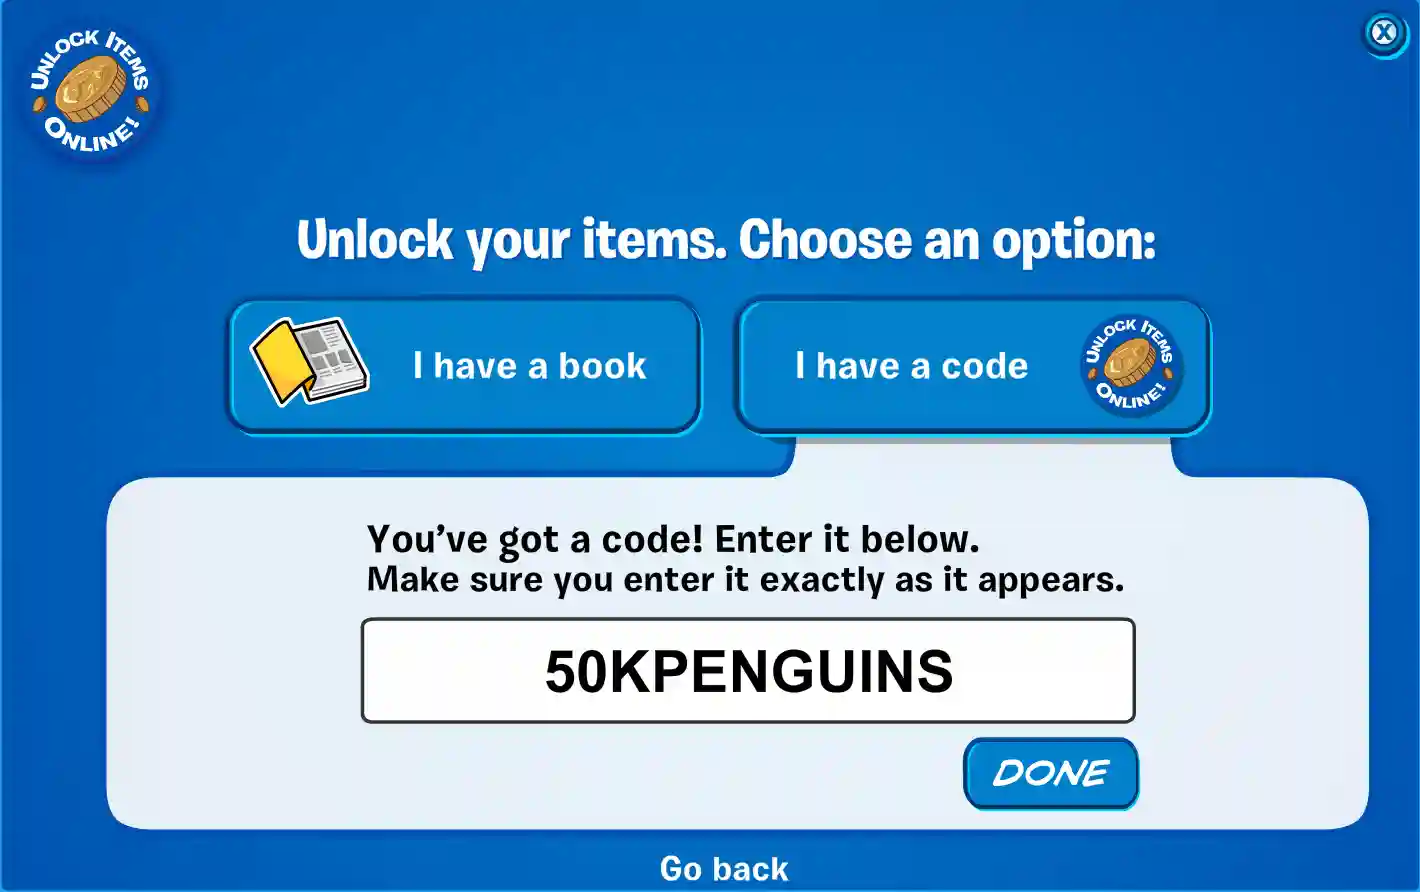 Club Penguin Rewritten Codes